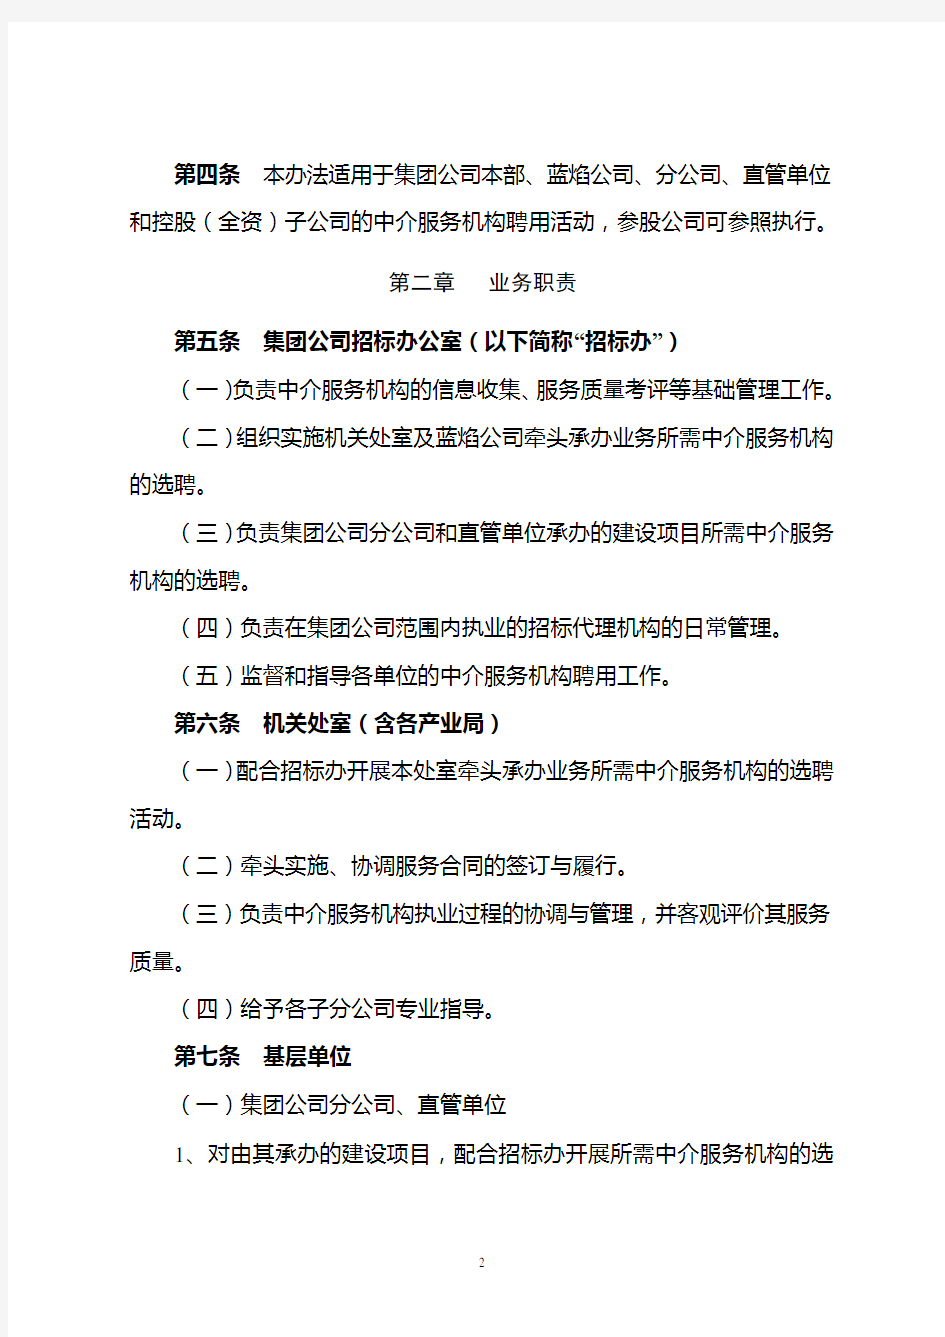 晋城煤业集团中介服务机构聘用管理办法(最终稿)